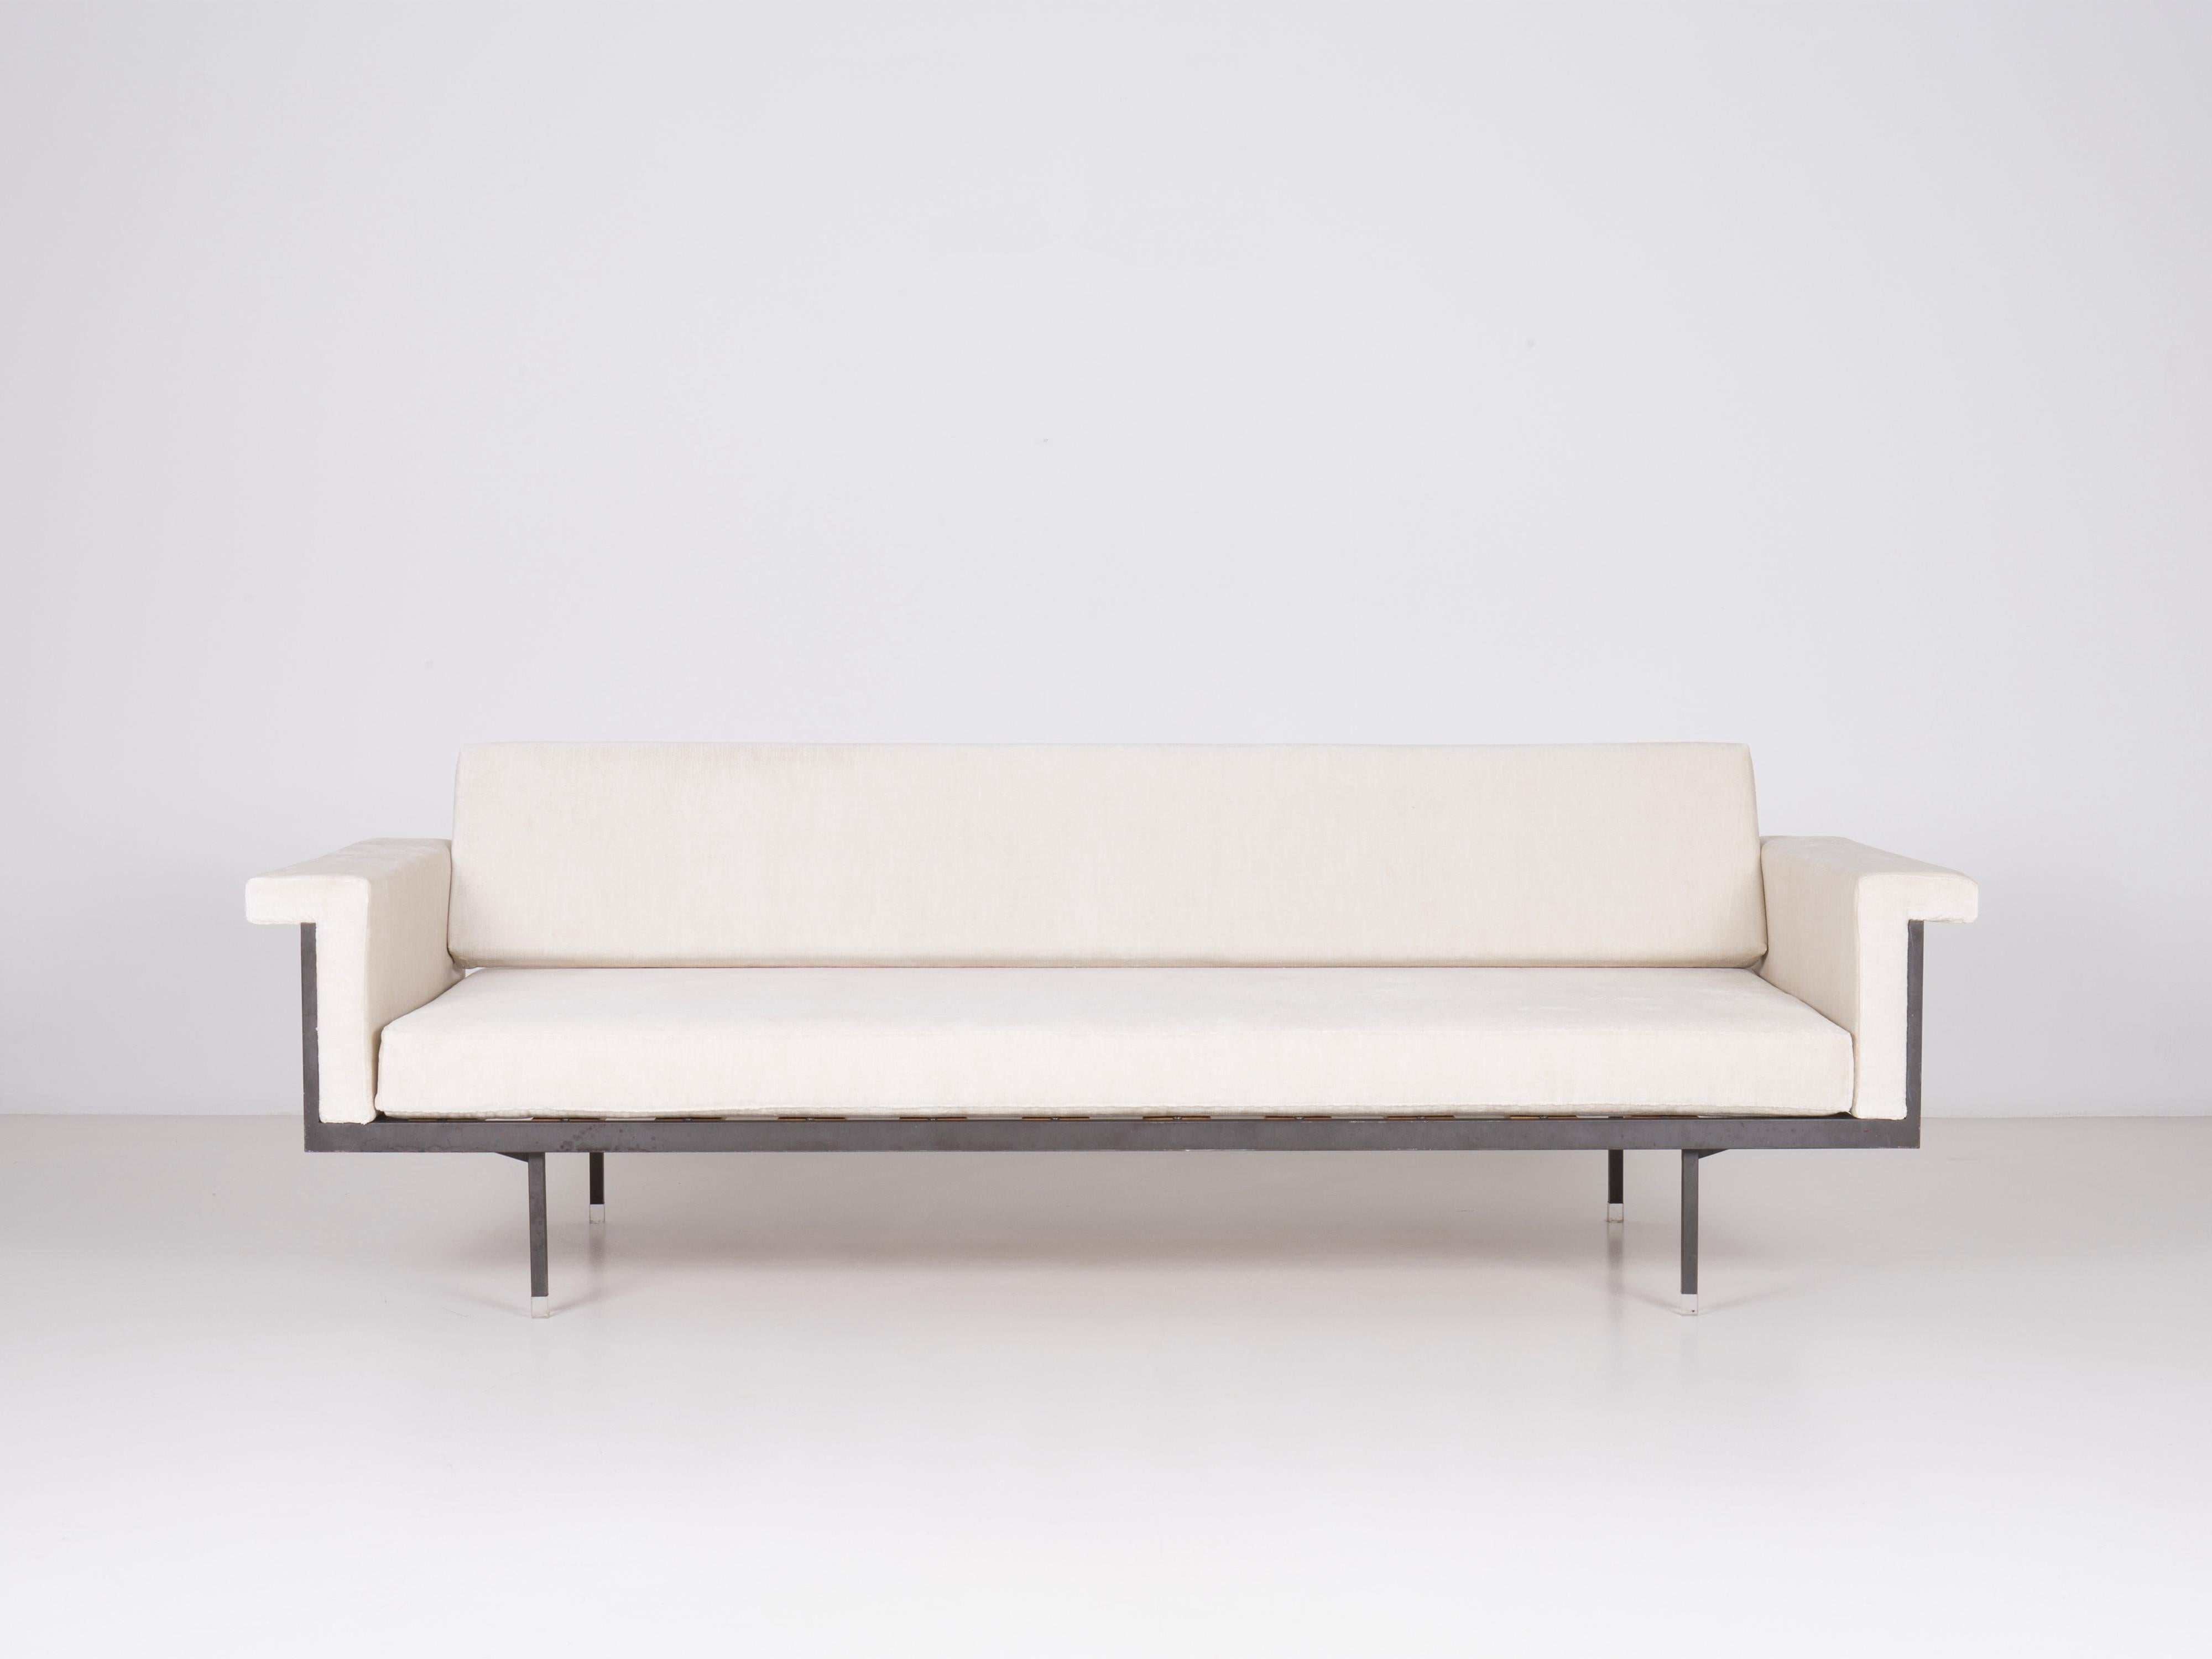 Naeko-Sofa (Tagesbett) von Kazuhide Takahama, erstes von Gavina hergestelltes Modell, kürzlich mit Leinen-Samt bezogen. Zwei Stück verfügbar. Gestell aus Metall, Polsterung aus Polyurethanschaum, leicht elastische Holzlatten, transparente